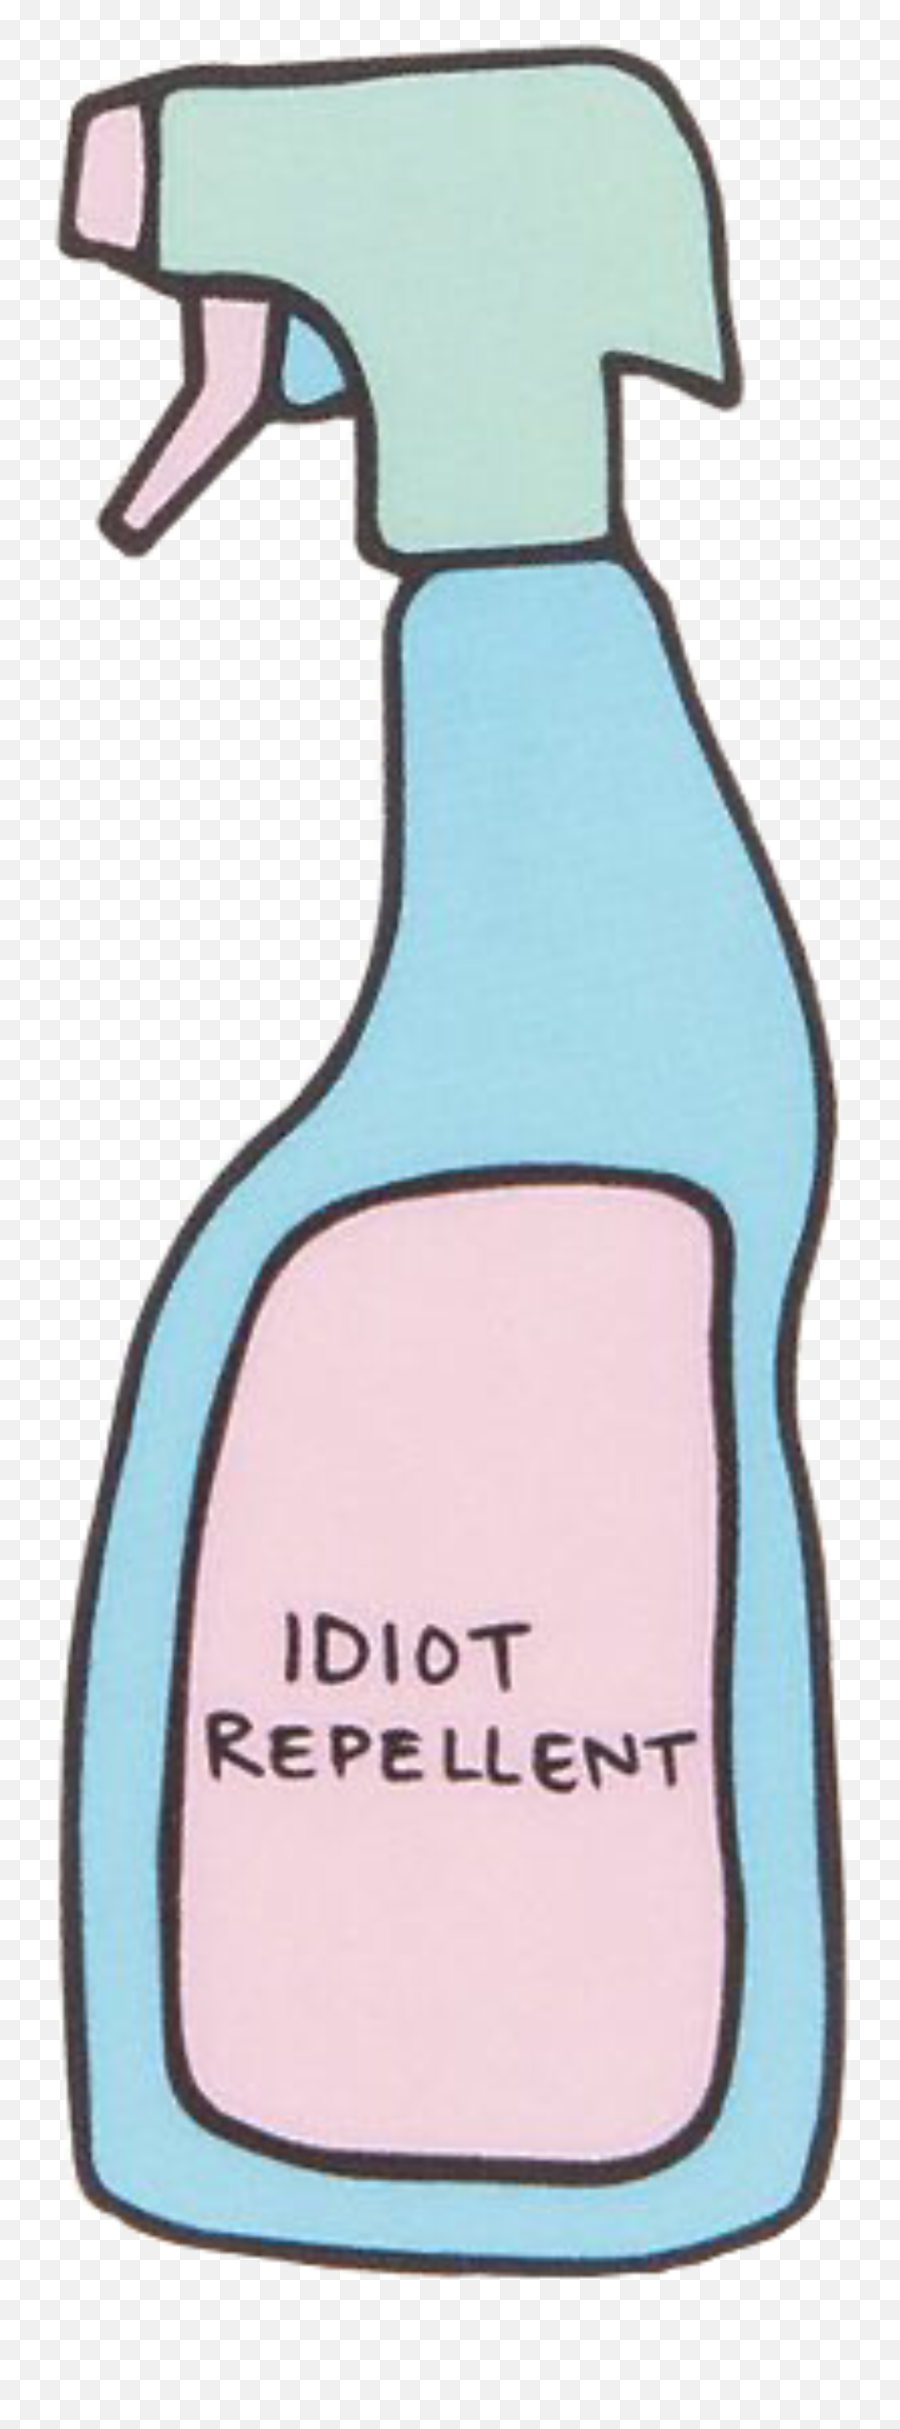 Spraybottle Idiot Sticker - Discord Spray Bottle Emoji,Spray Bottle Emoji